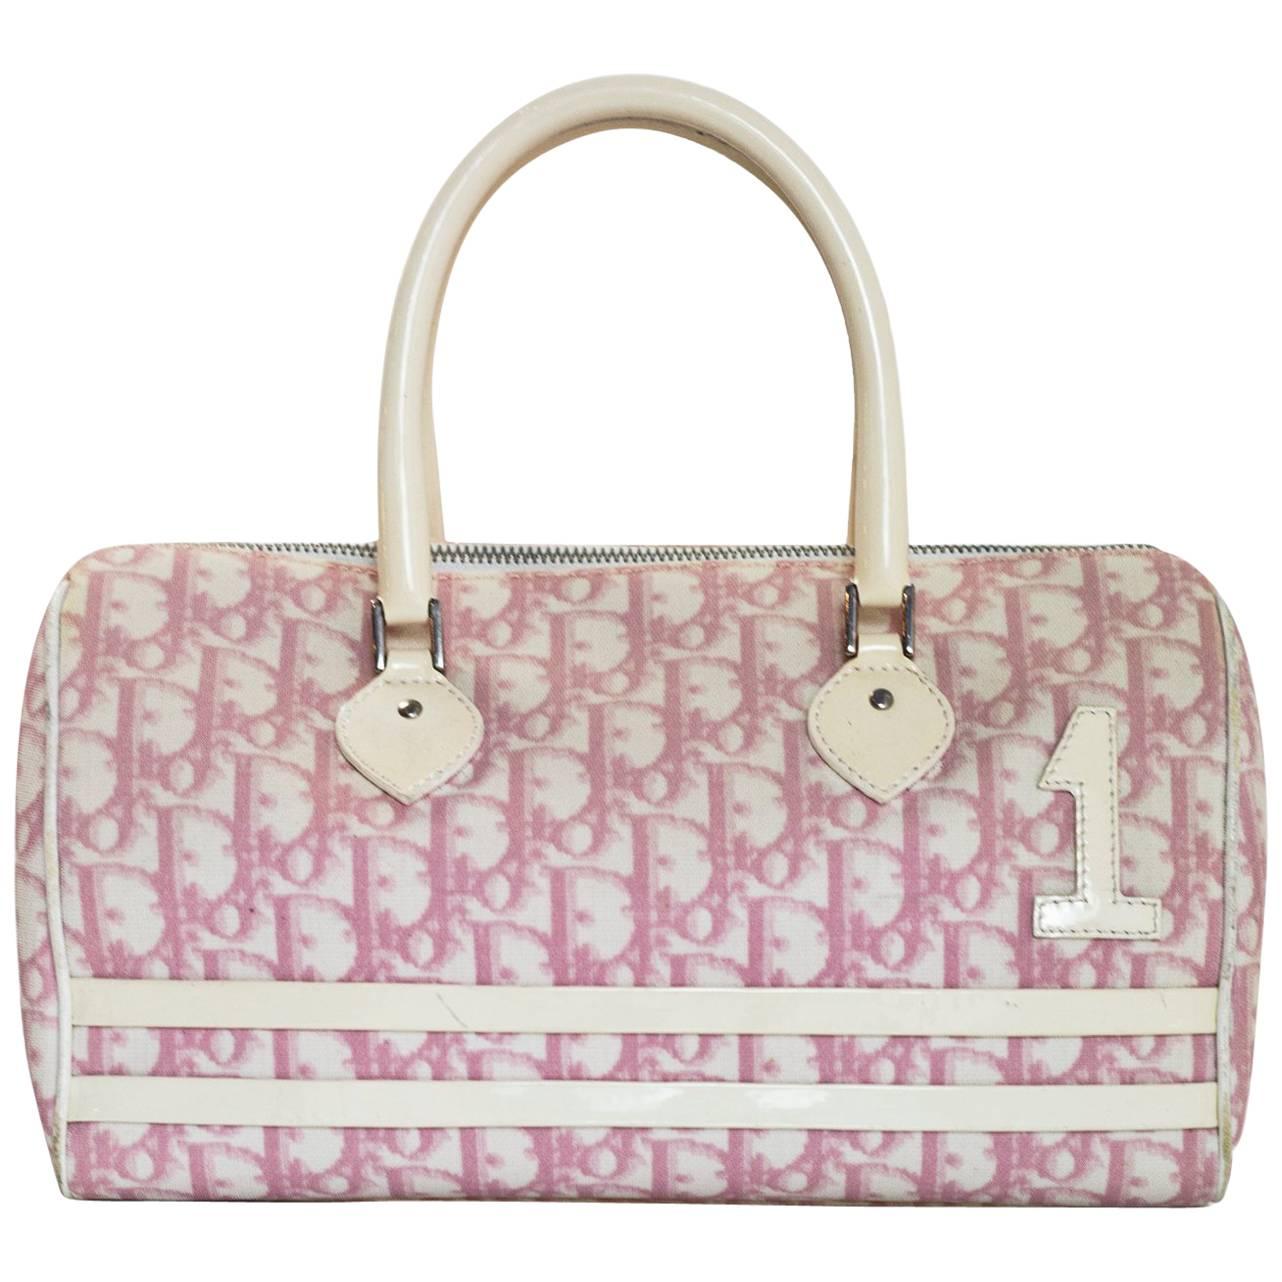 dior vintage pink bag